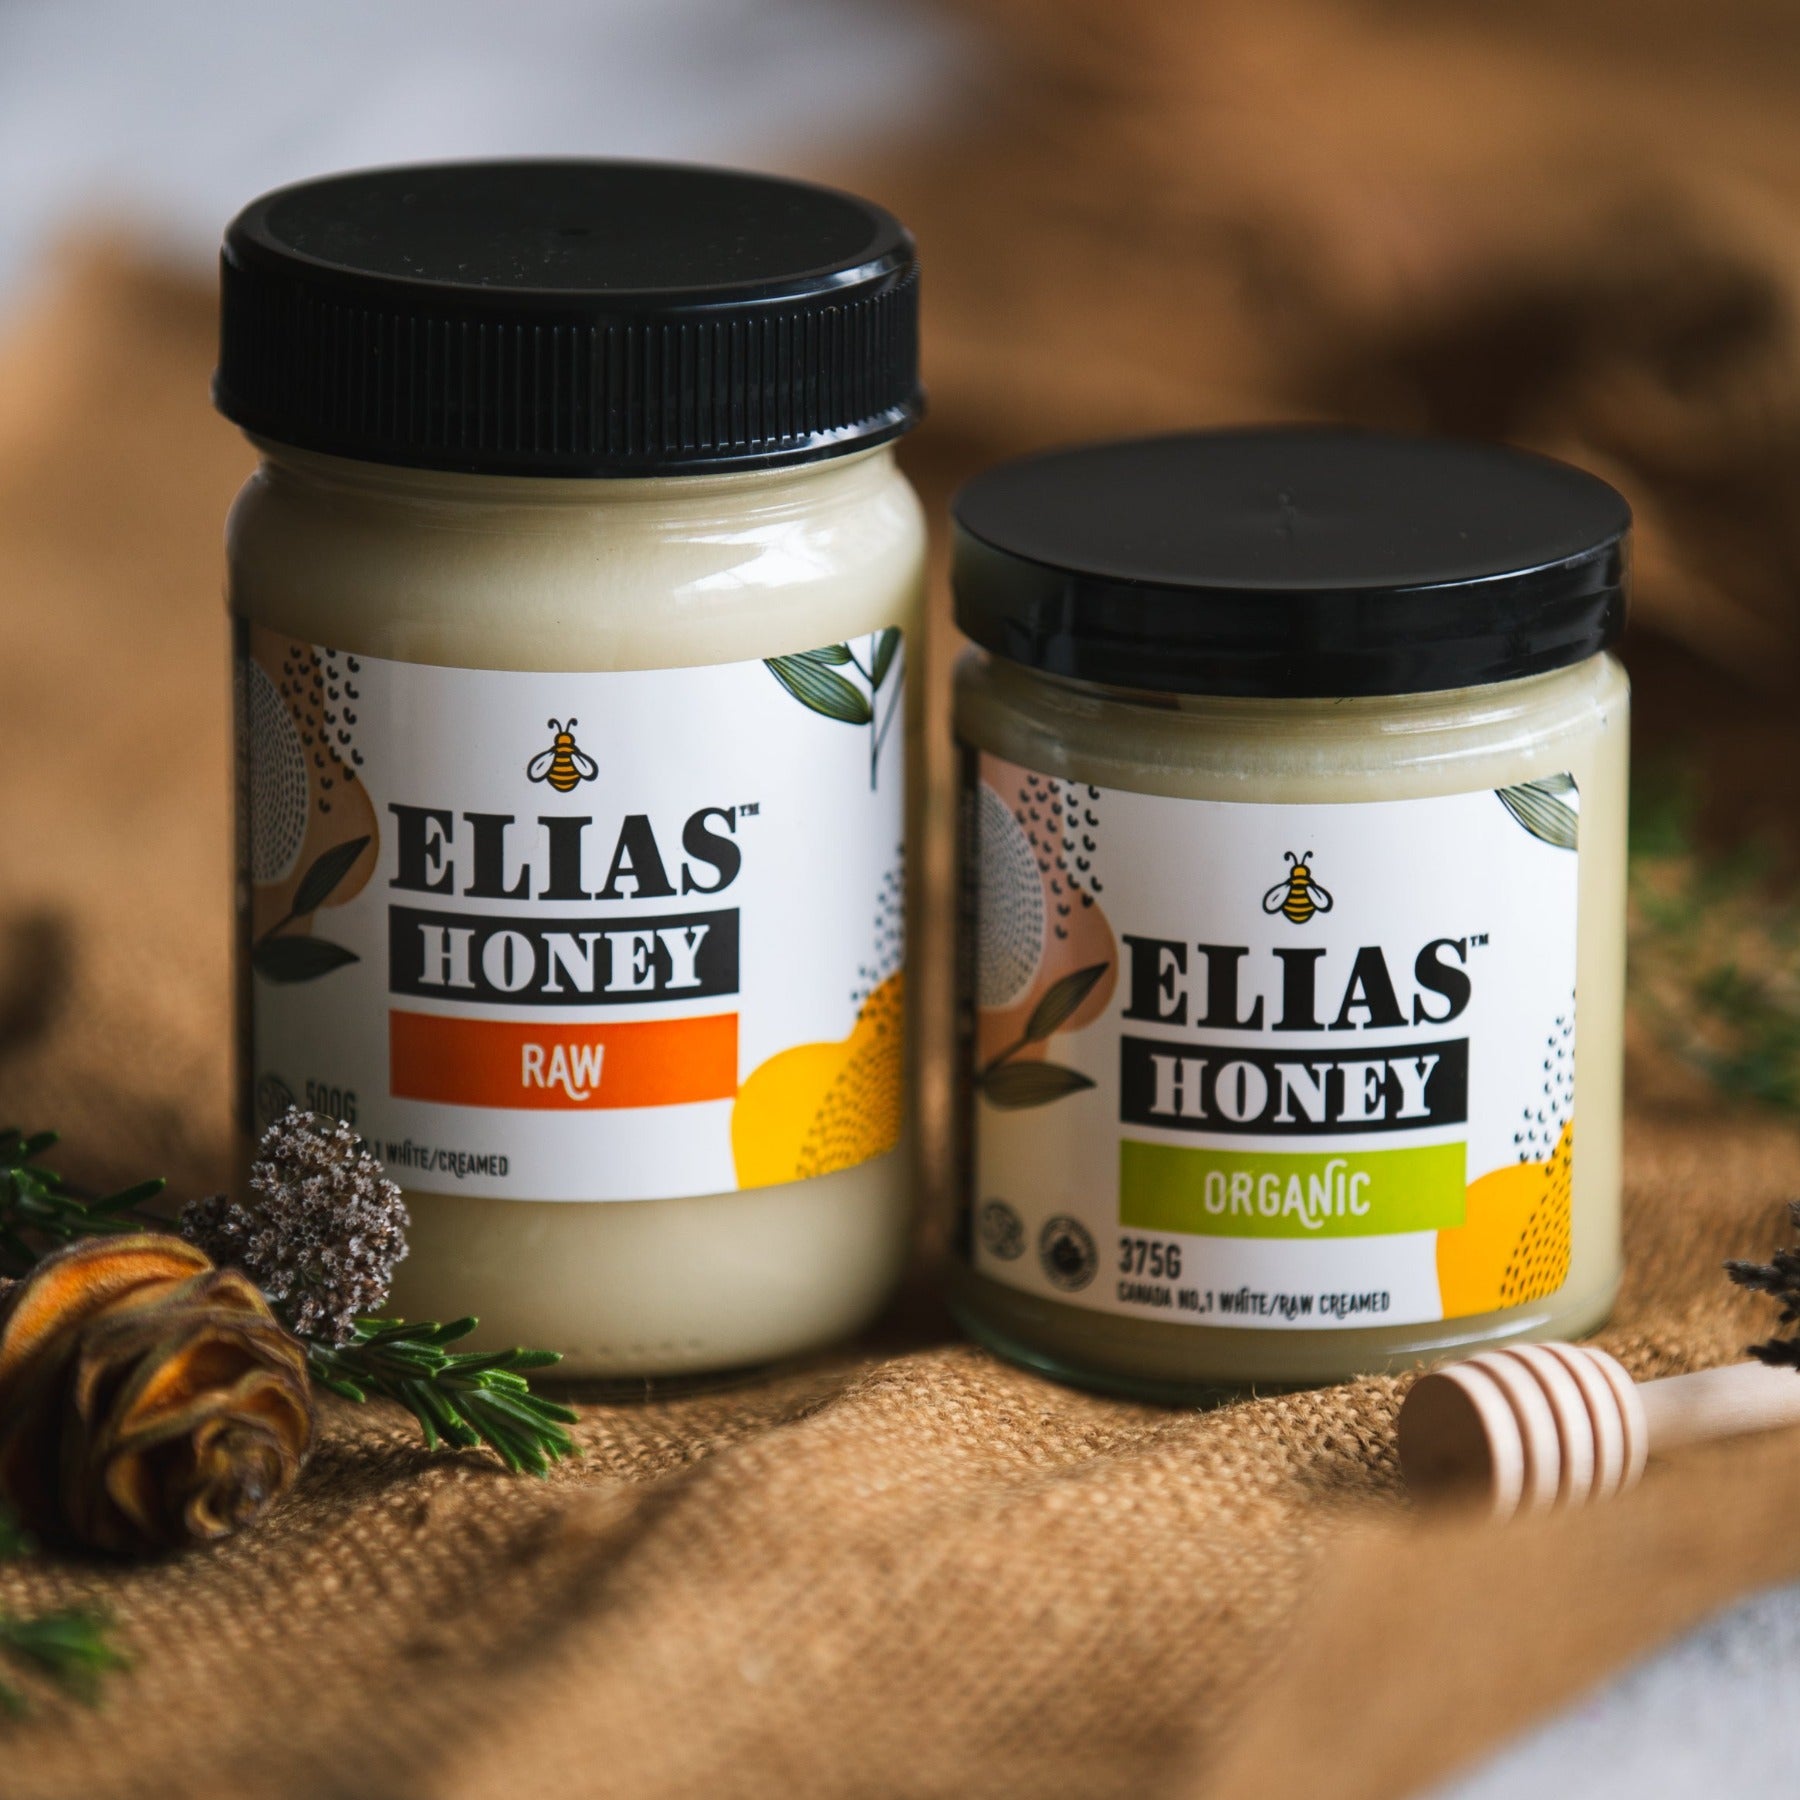 Elias Honey Raw 500gr Jar and Elais Honey Organic 375gr